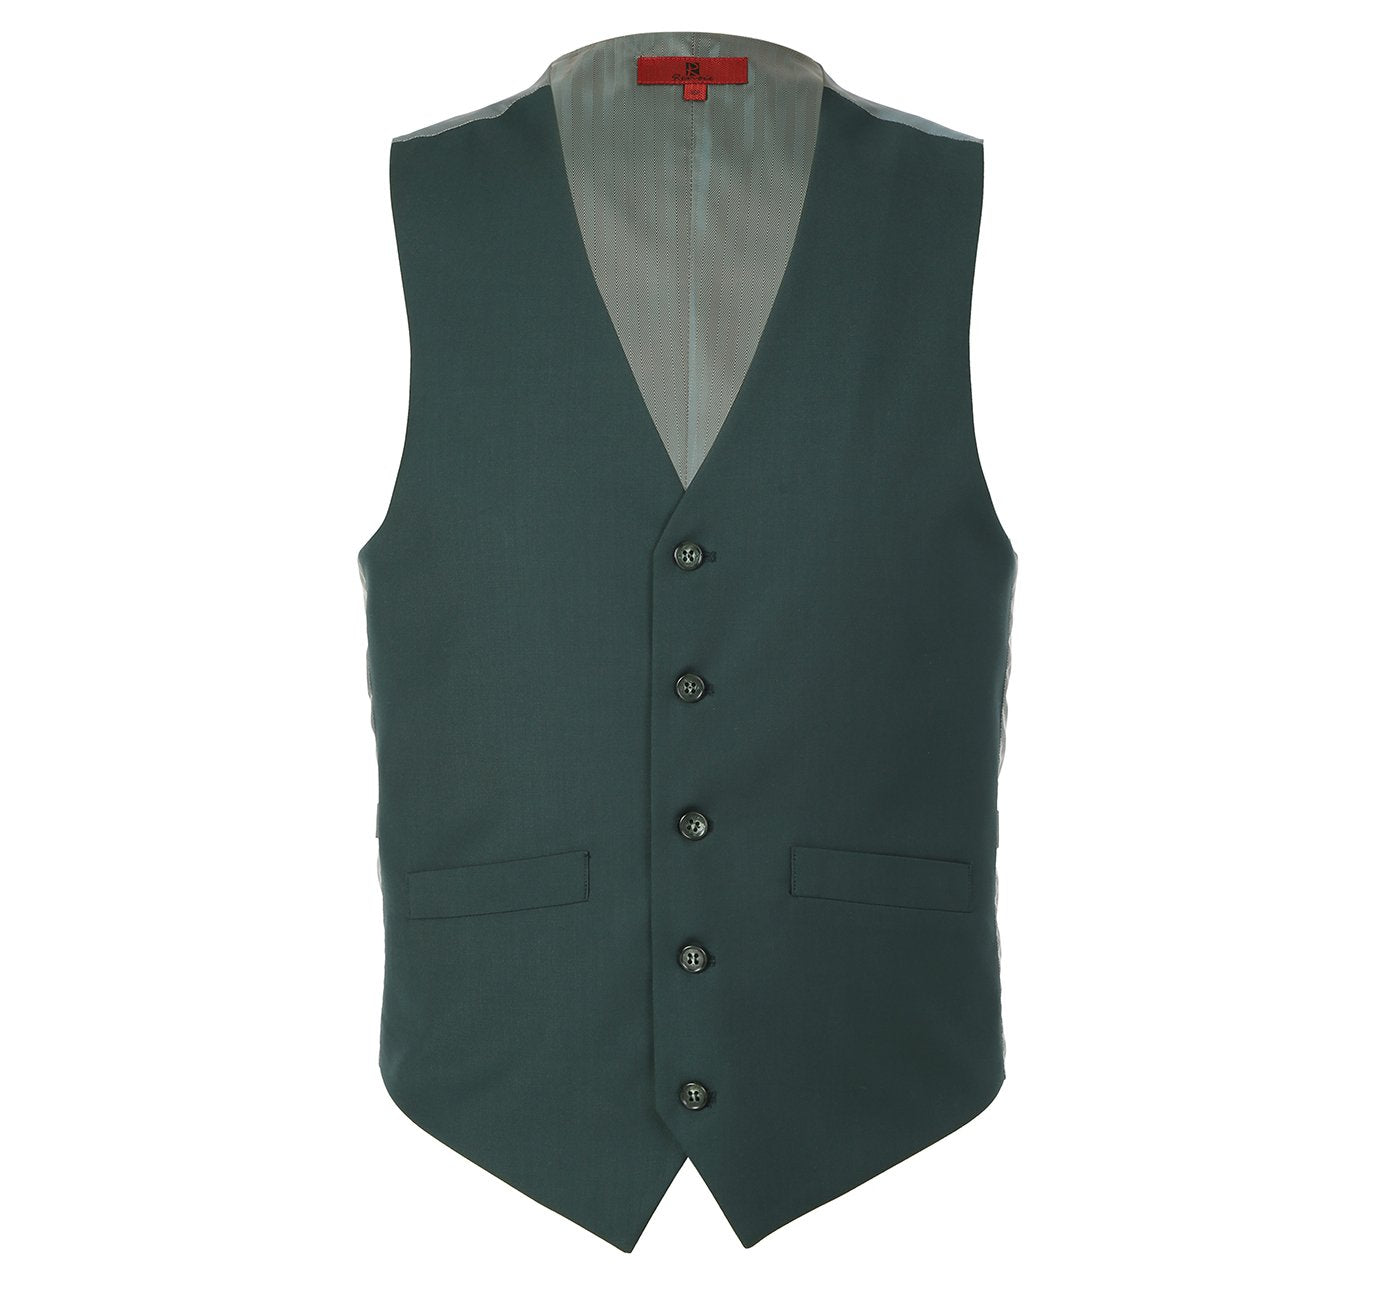 201-9 Men's Olive Green Classic Fit Suit Separate Vest